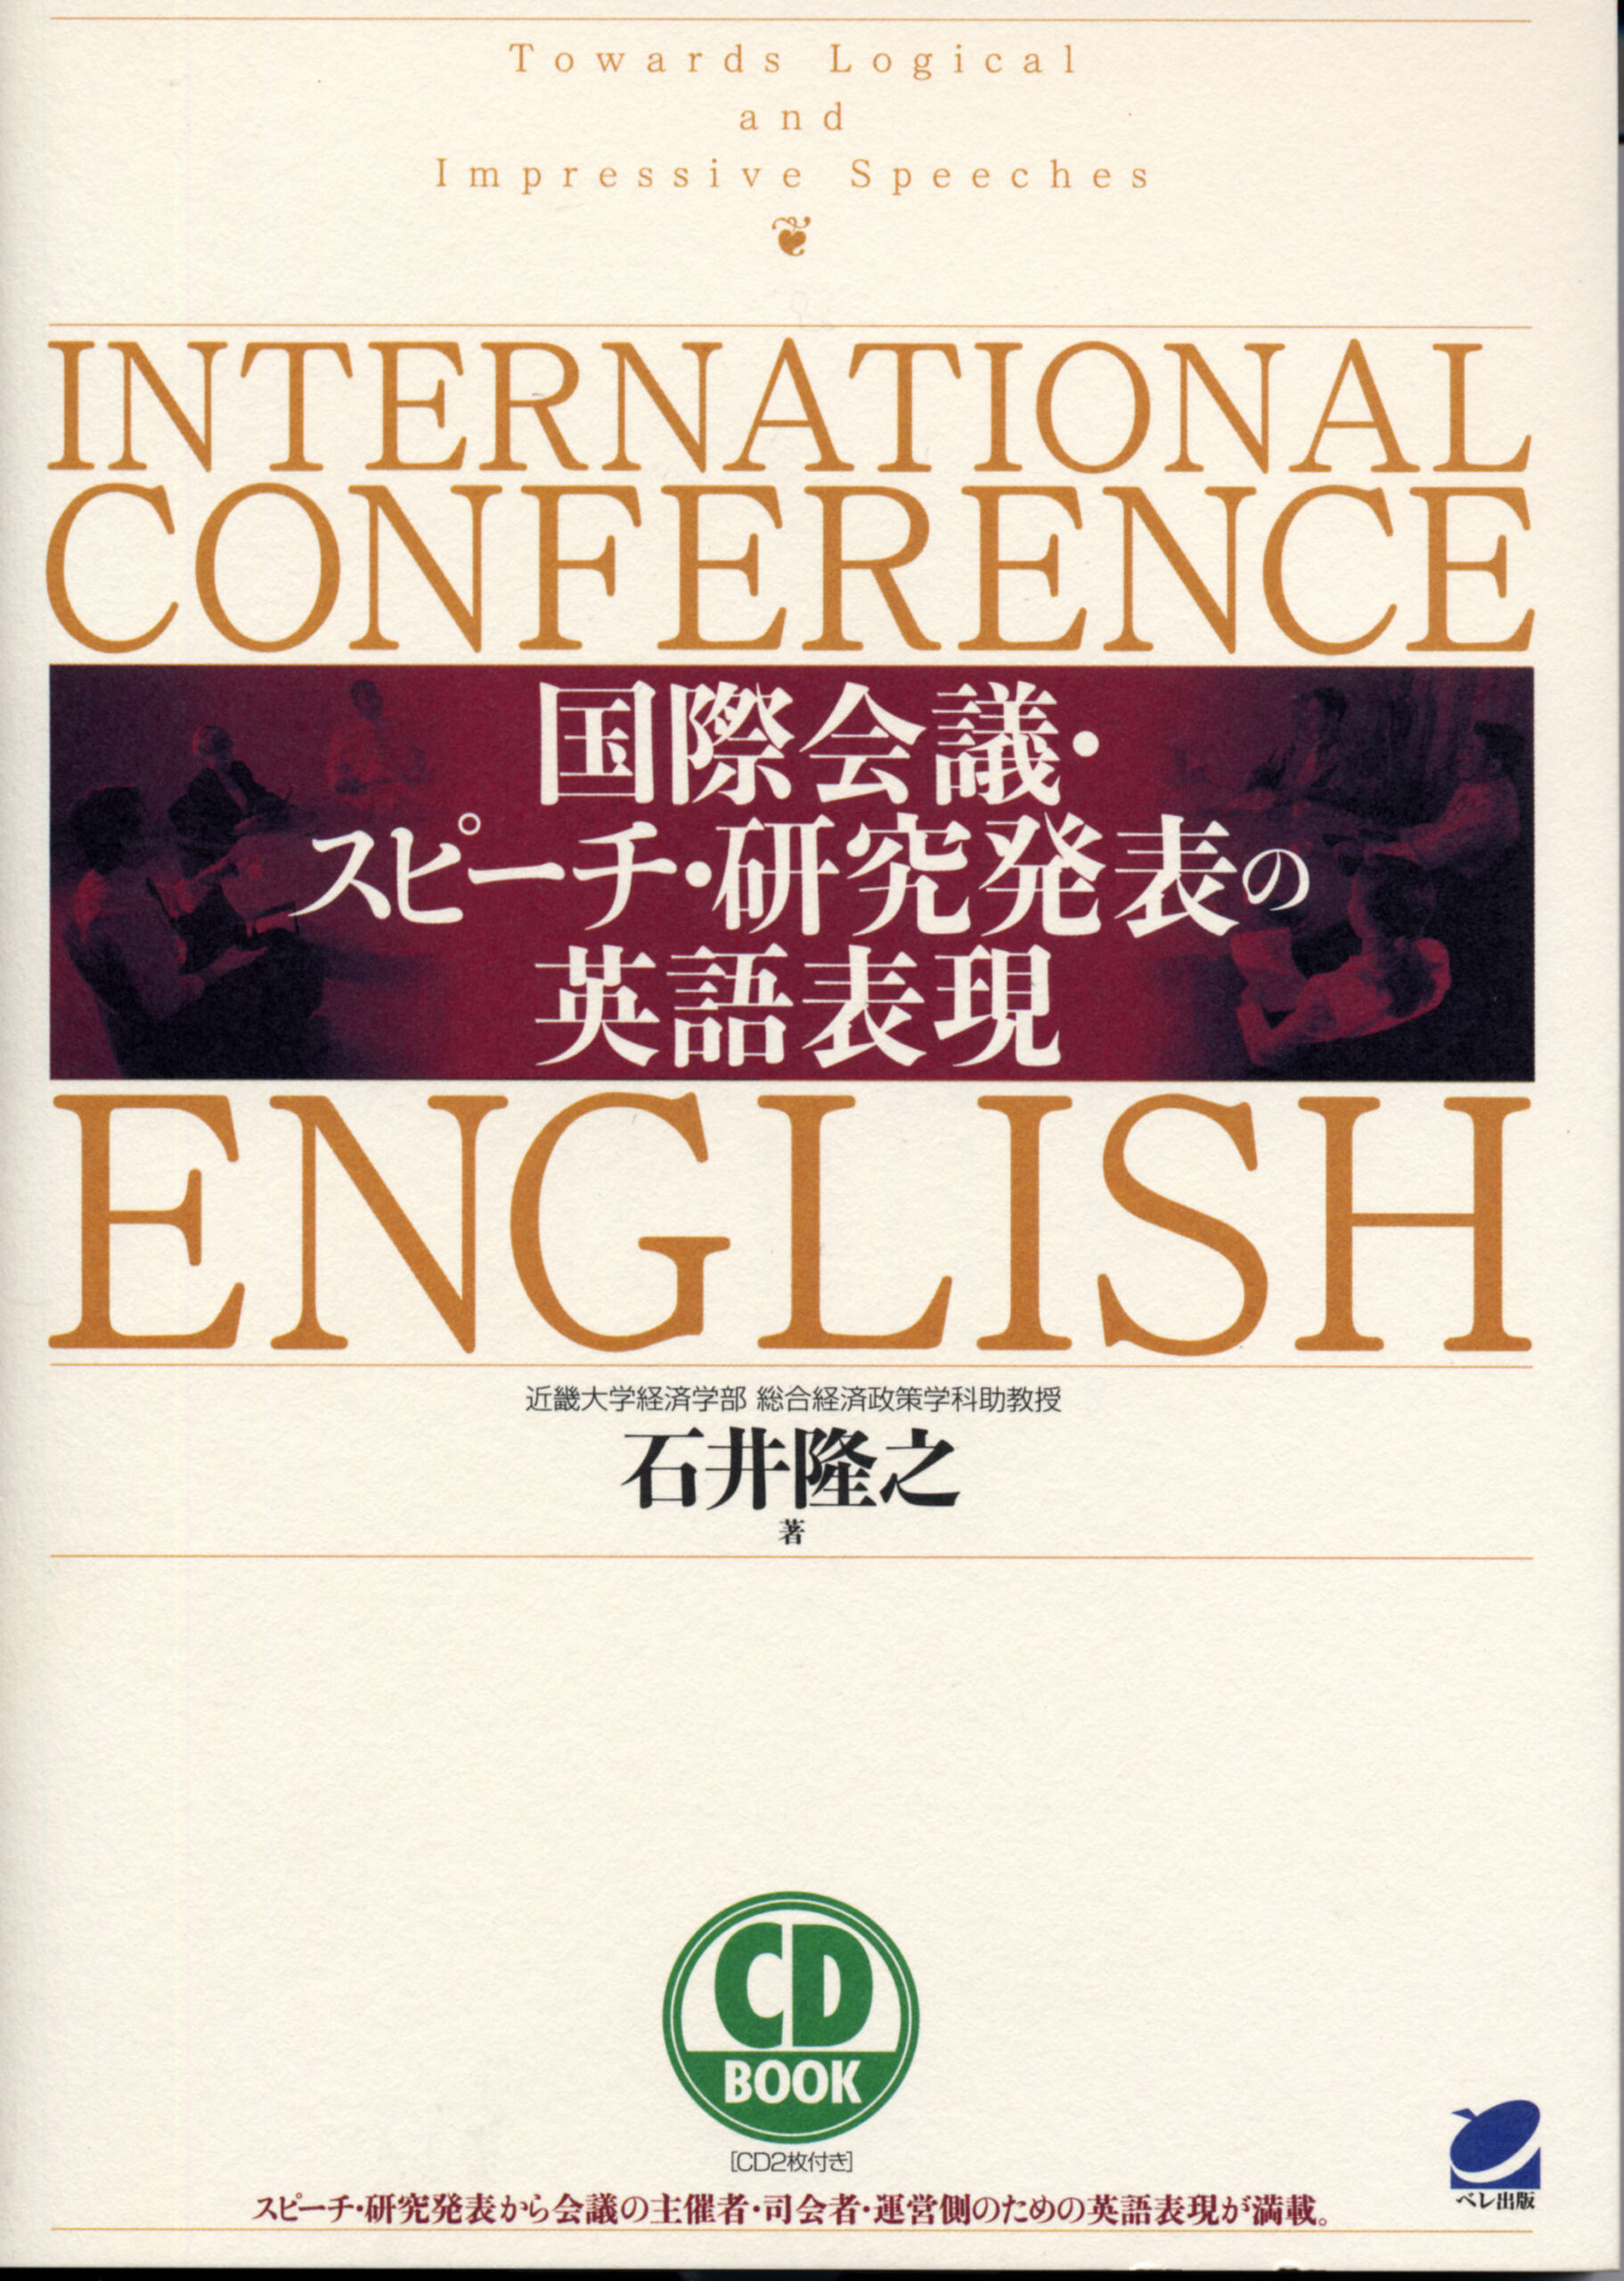 国際会議・スピーチ・研究発表の英語表現 CD BOOK - いつも、学ぶ人の近くに【ベレ出版】